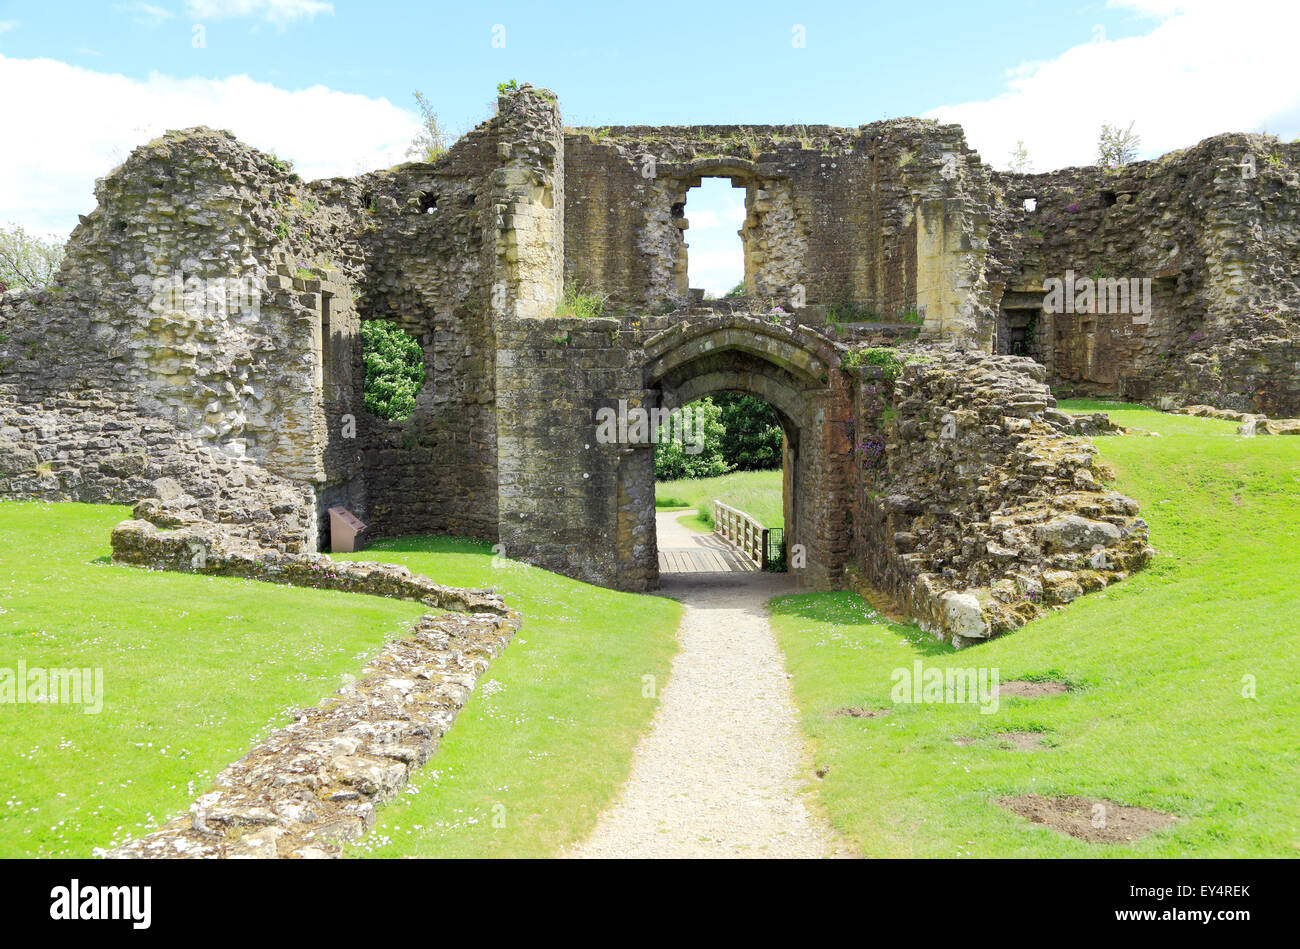 El Helmsley castillo medieval, el Gatehouse, Inglaterra Yorkshire Foto de stock